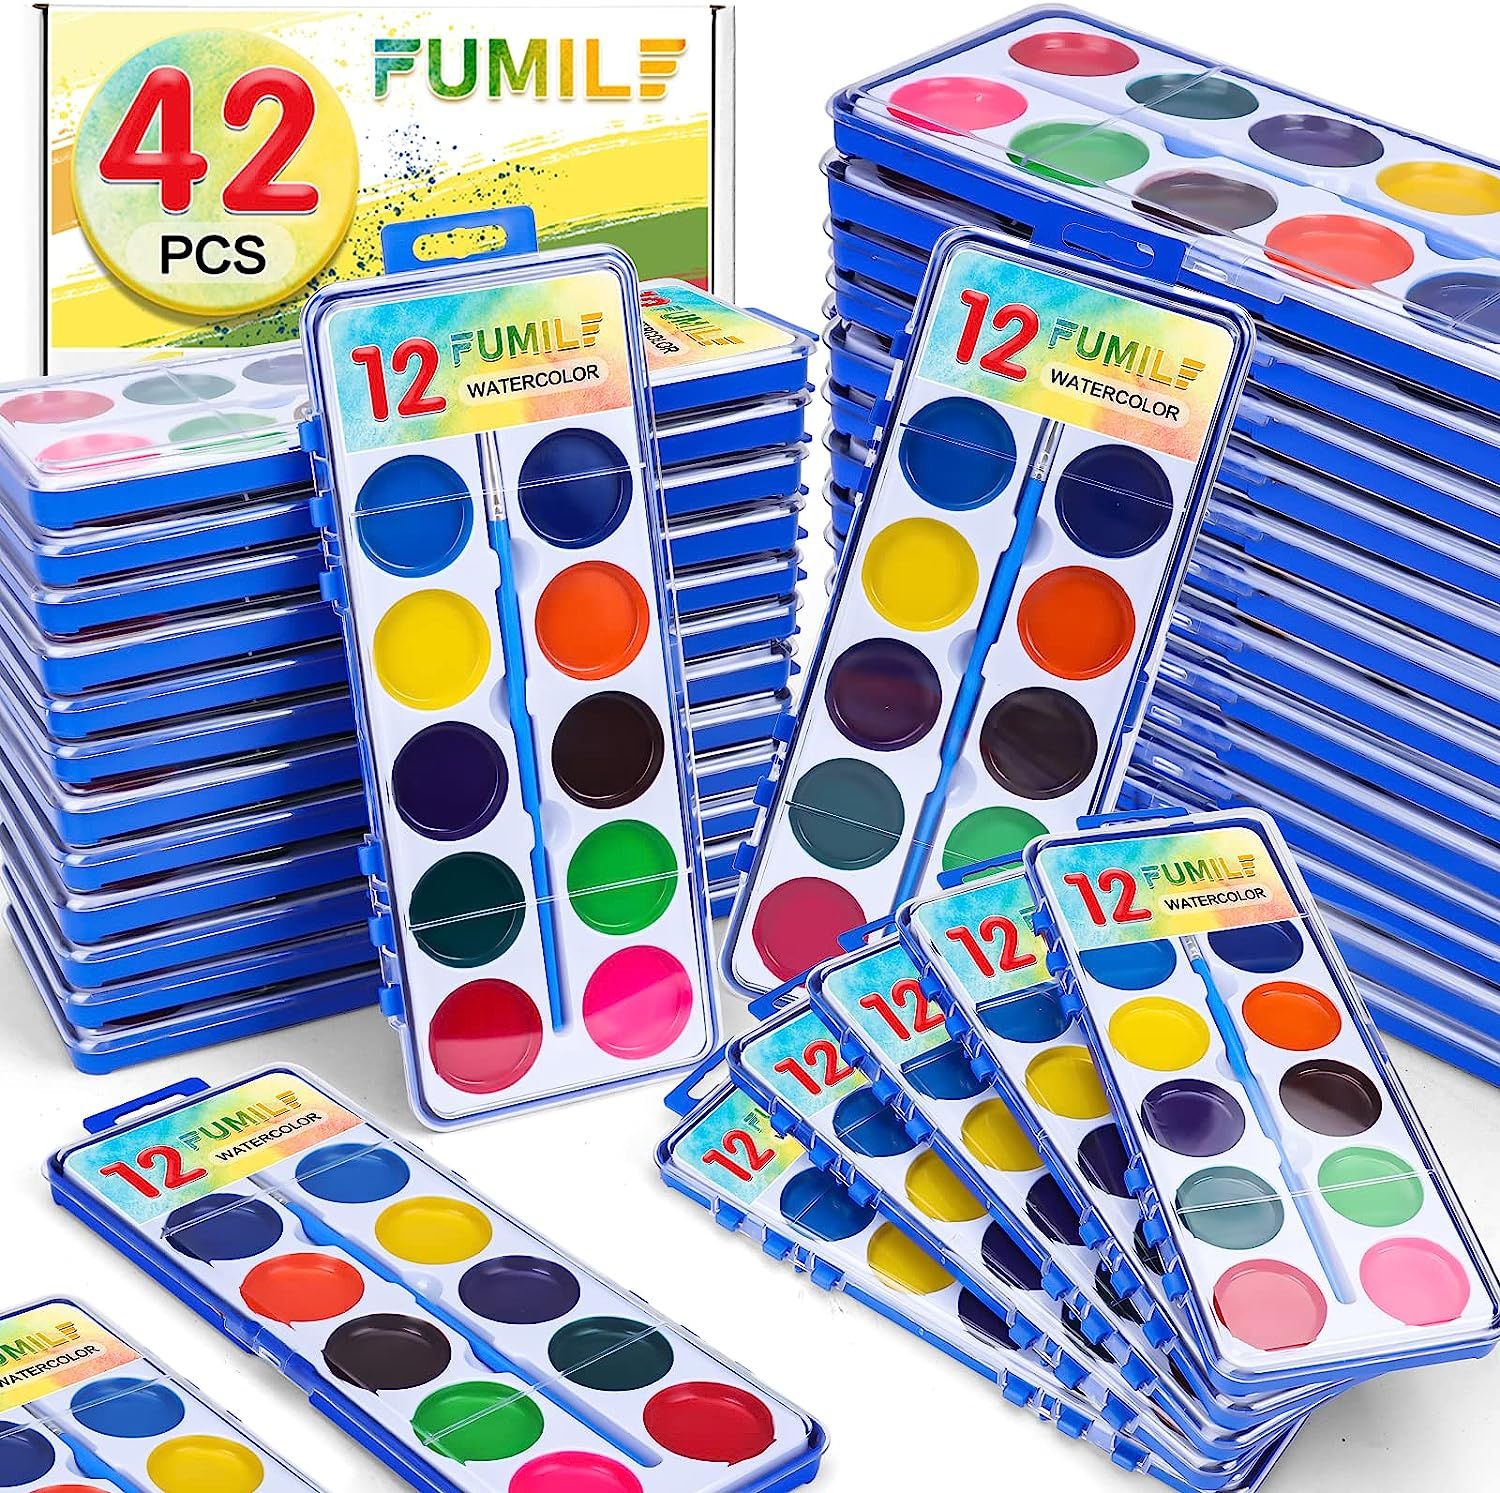 42 Pack Watercolor Paint Set for Kids,12 Colors Bulk Pack of 42 Watercolors Paints with Paint Bru... | Amazon (US)